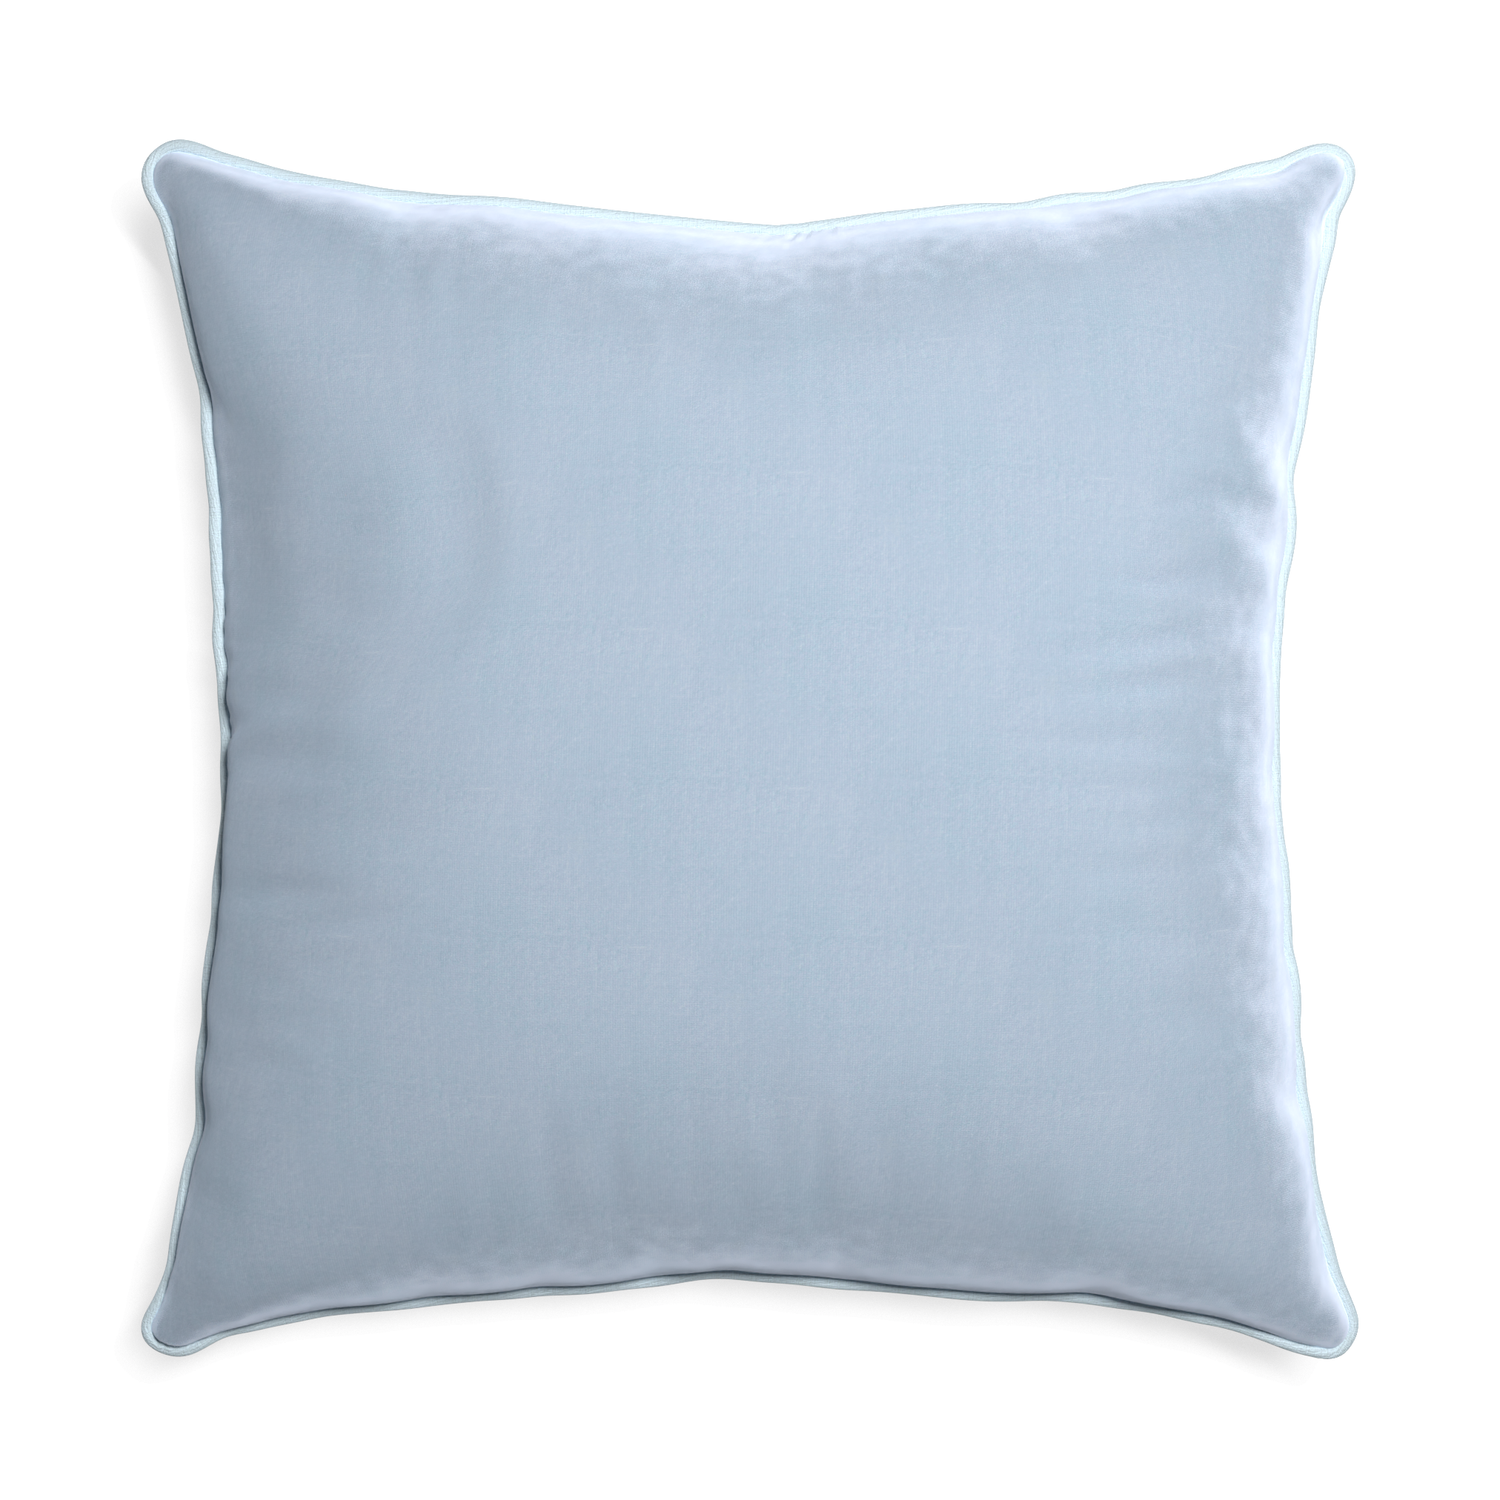 square light blue velvet pillow with light blue piping